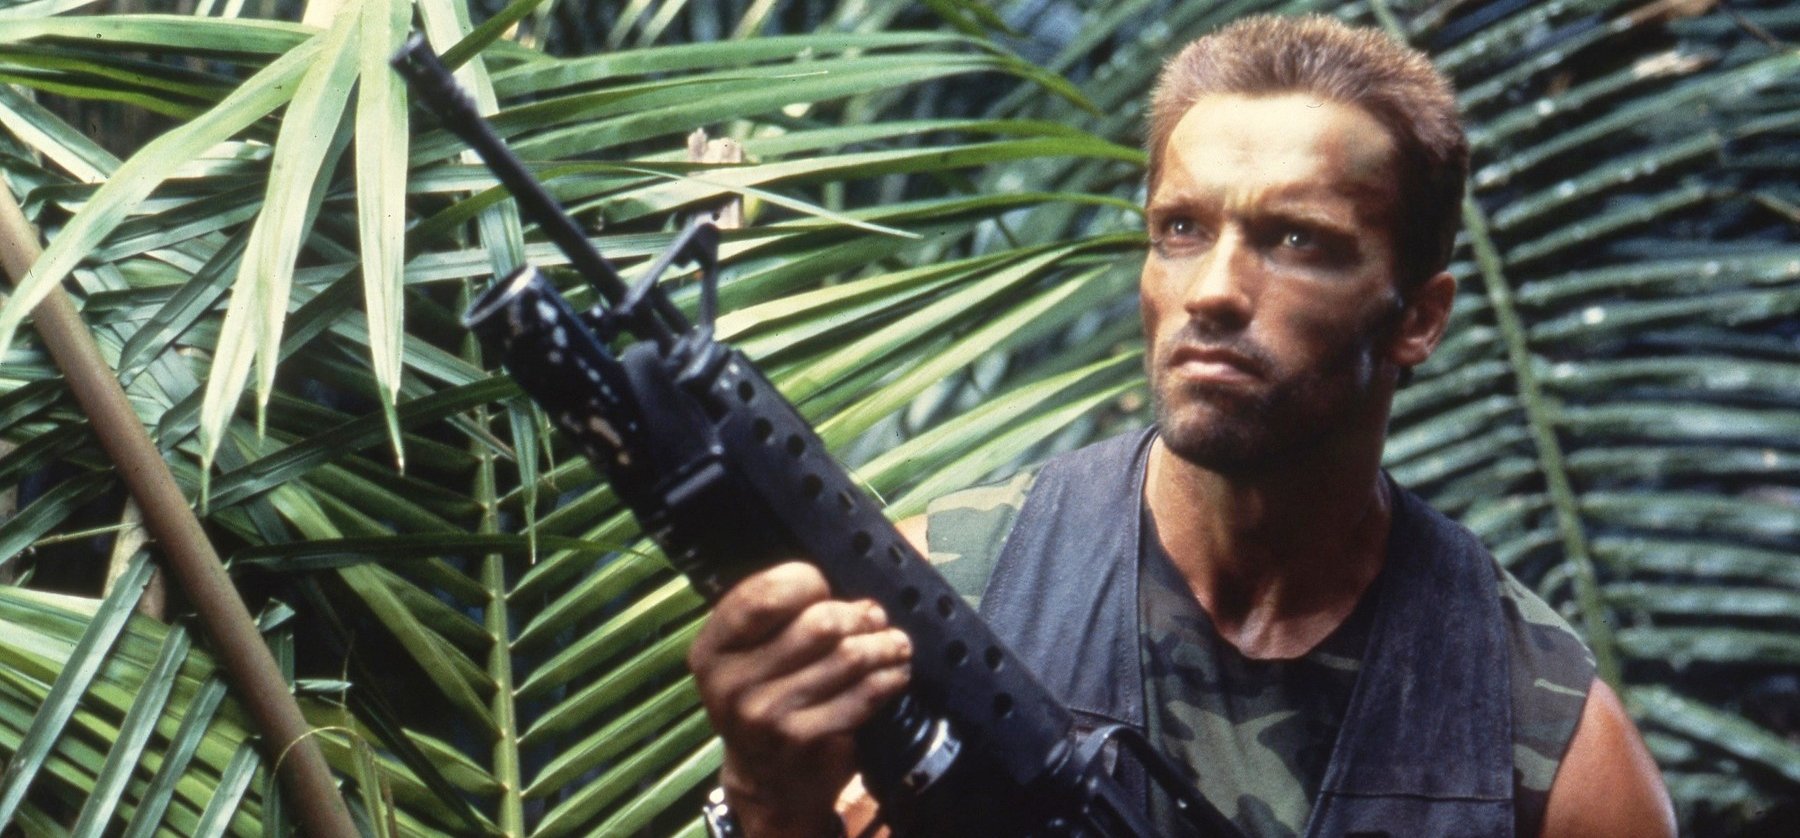 Végre kiderült, hogy Arnold Schwarzenegger valójában miért nem vállalta a Predator folytatását